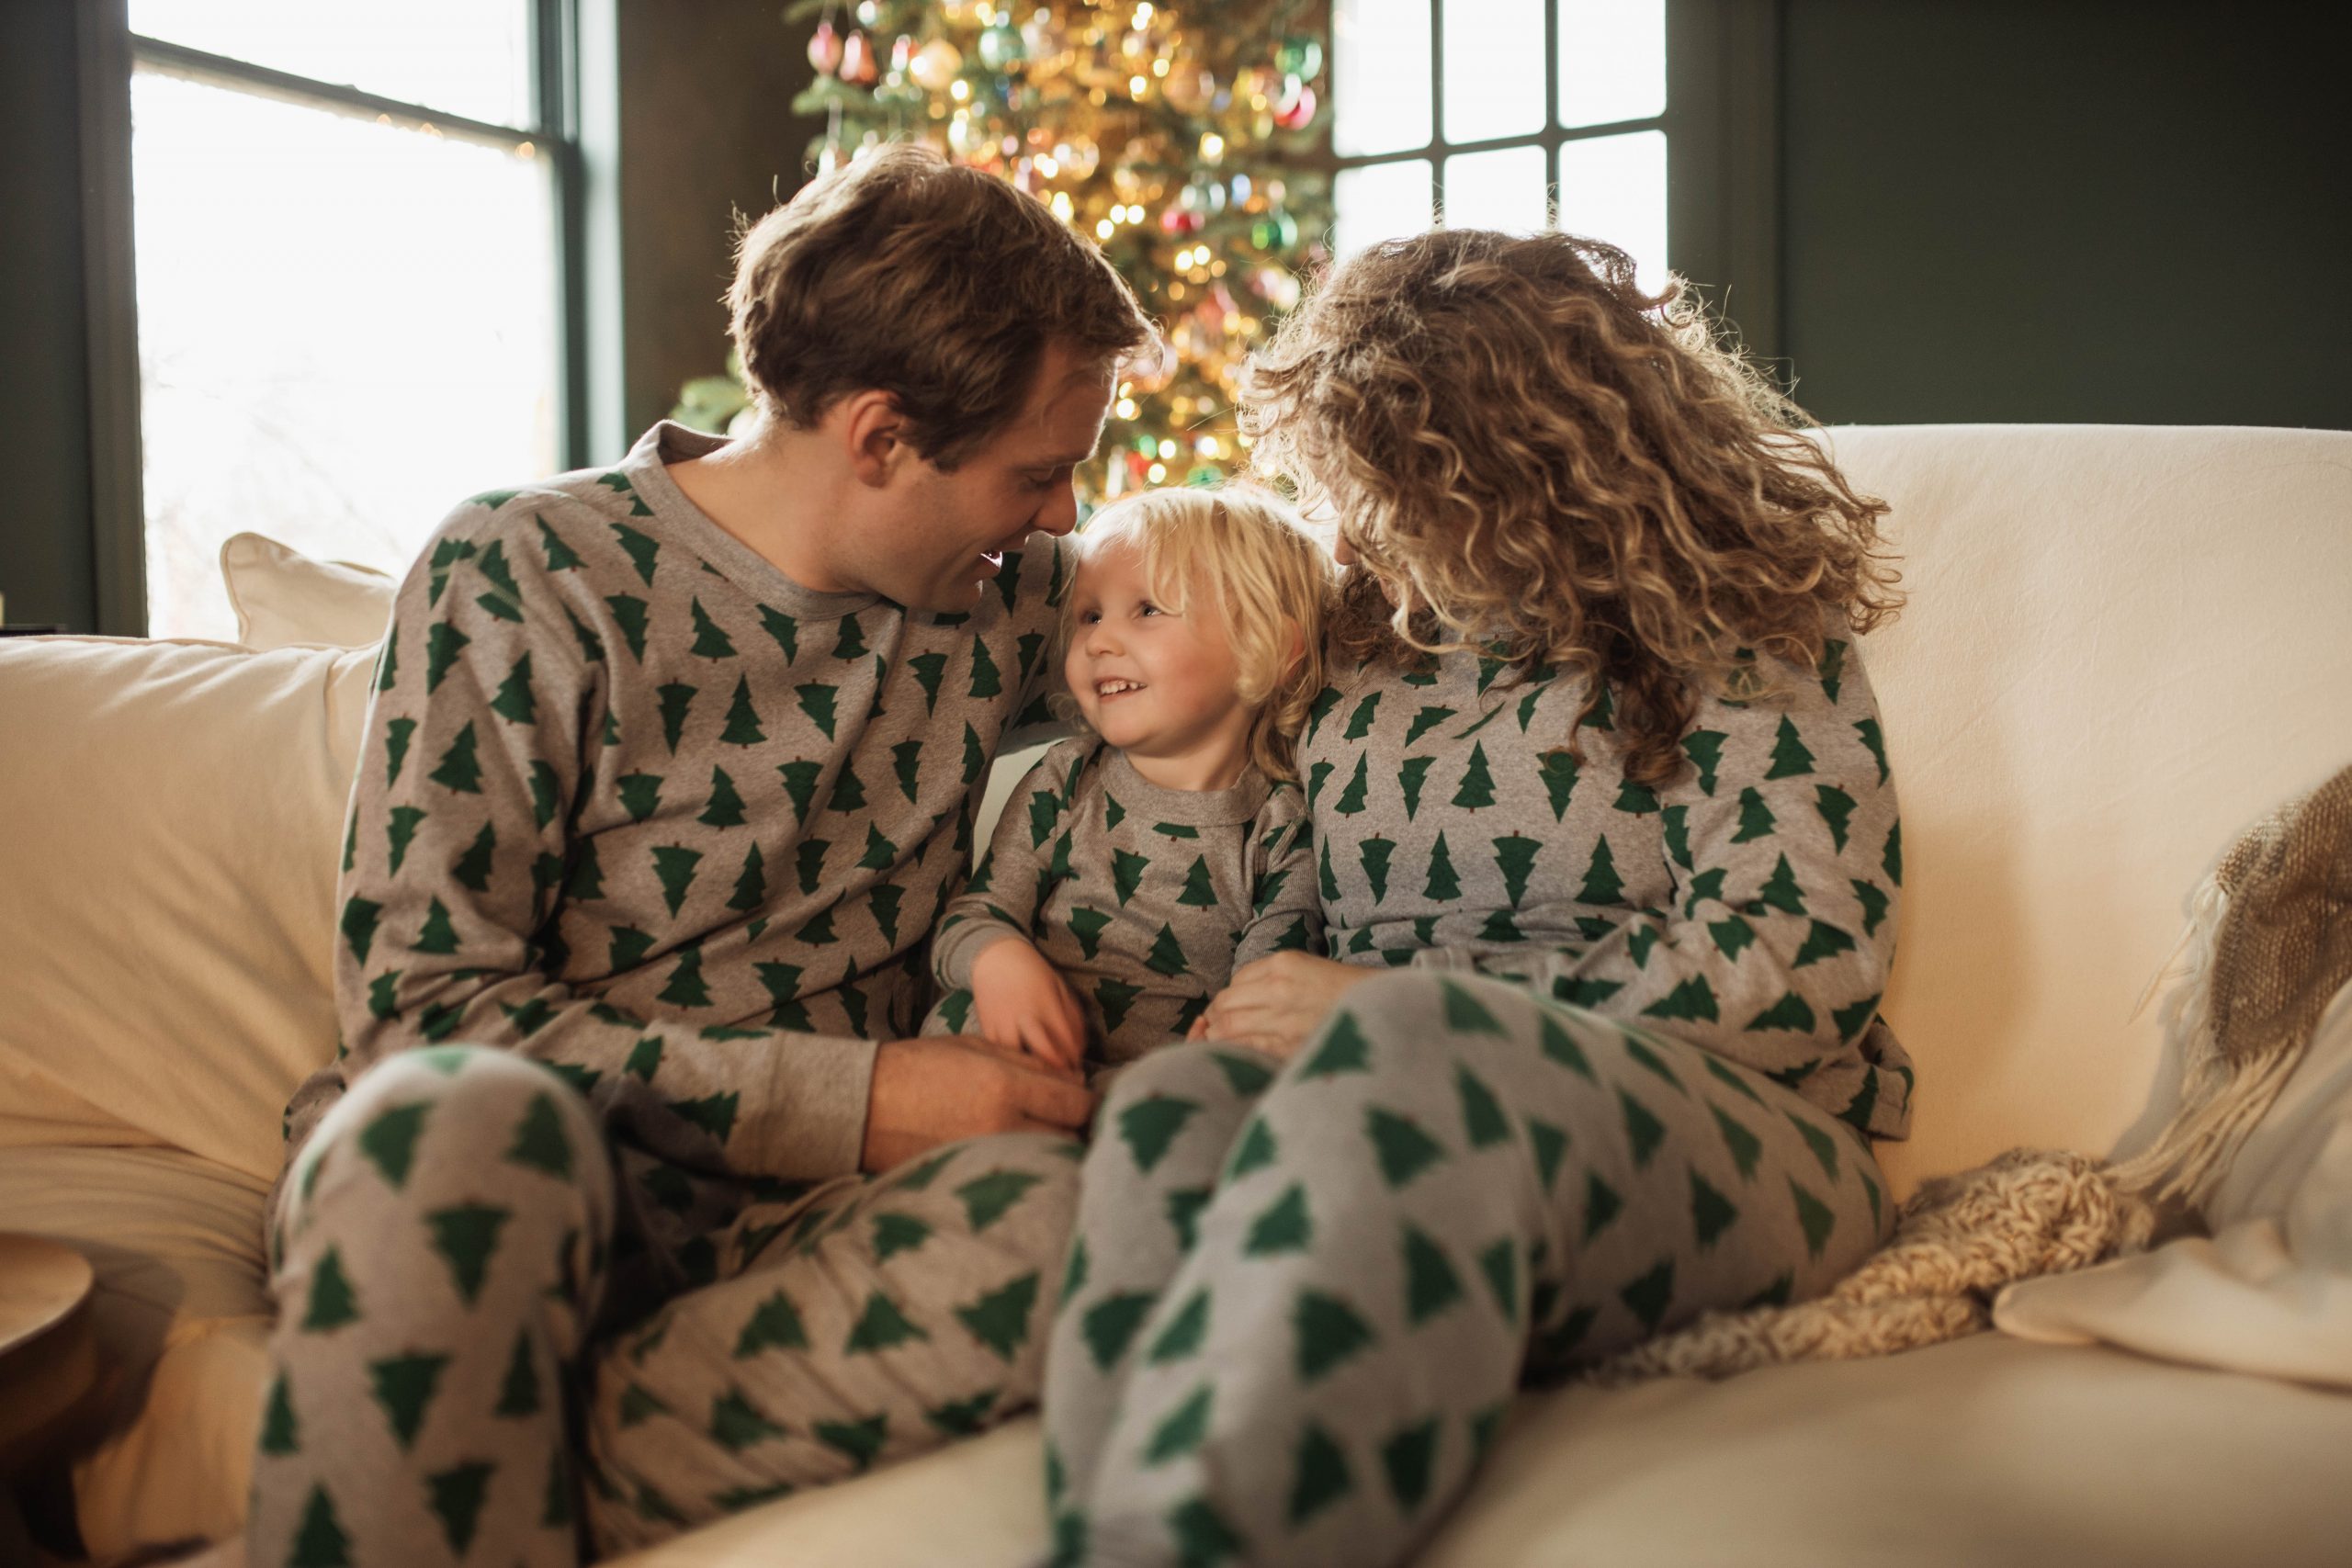 Matching Pajamas from Hannah Anderson